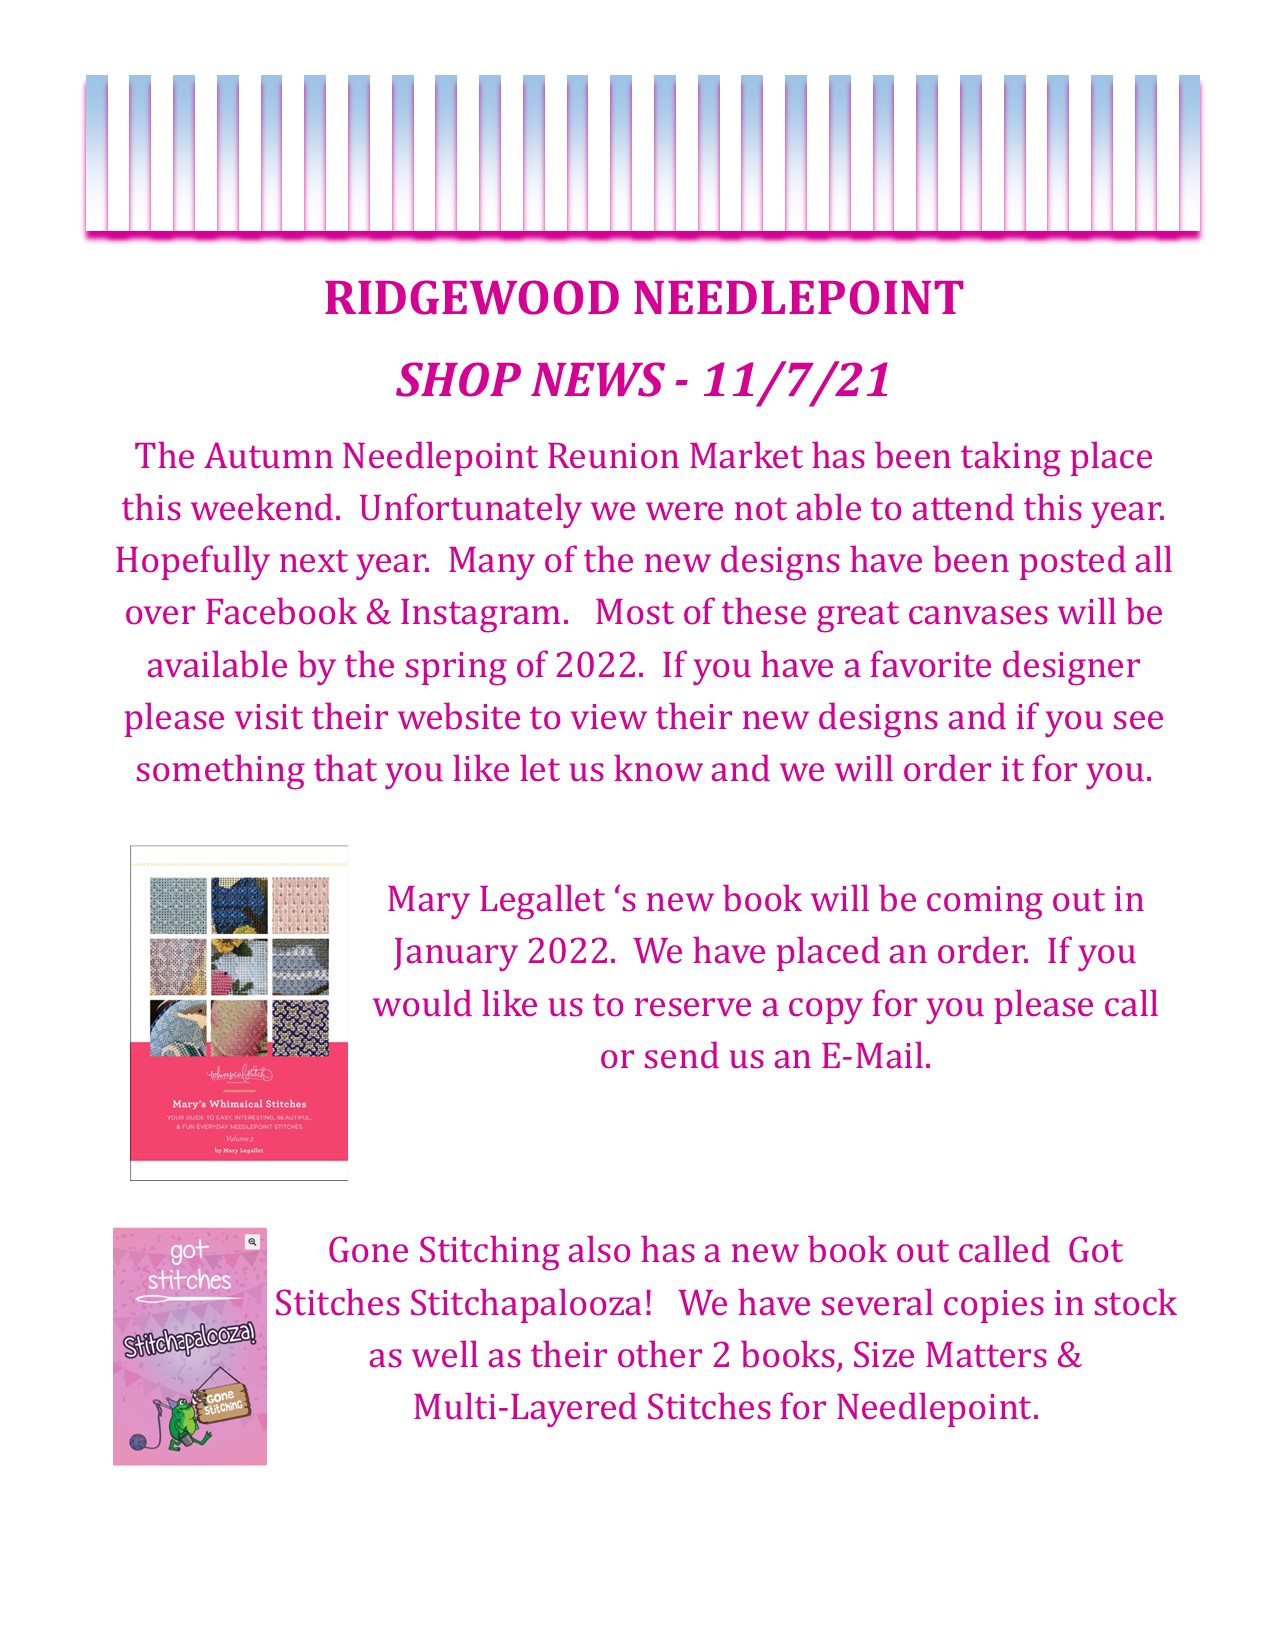 Shop News 11-7-21